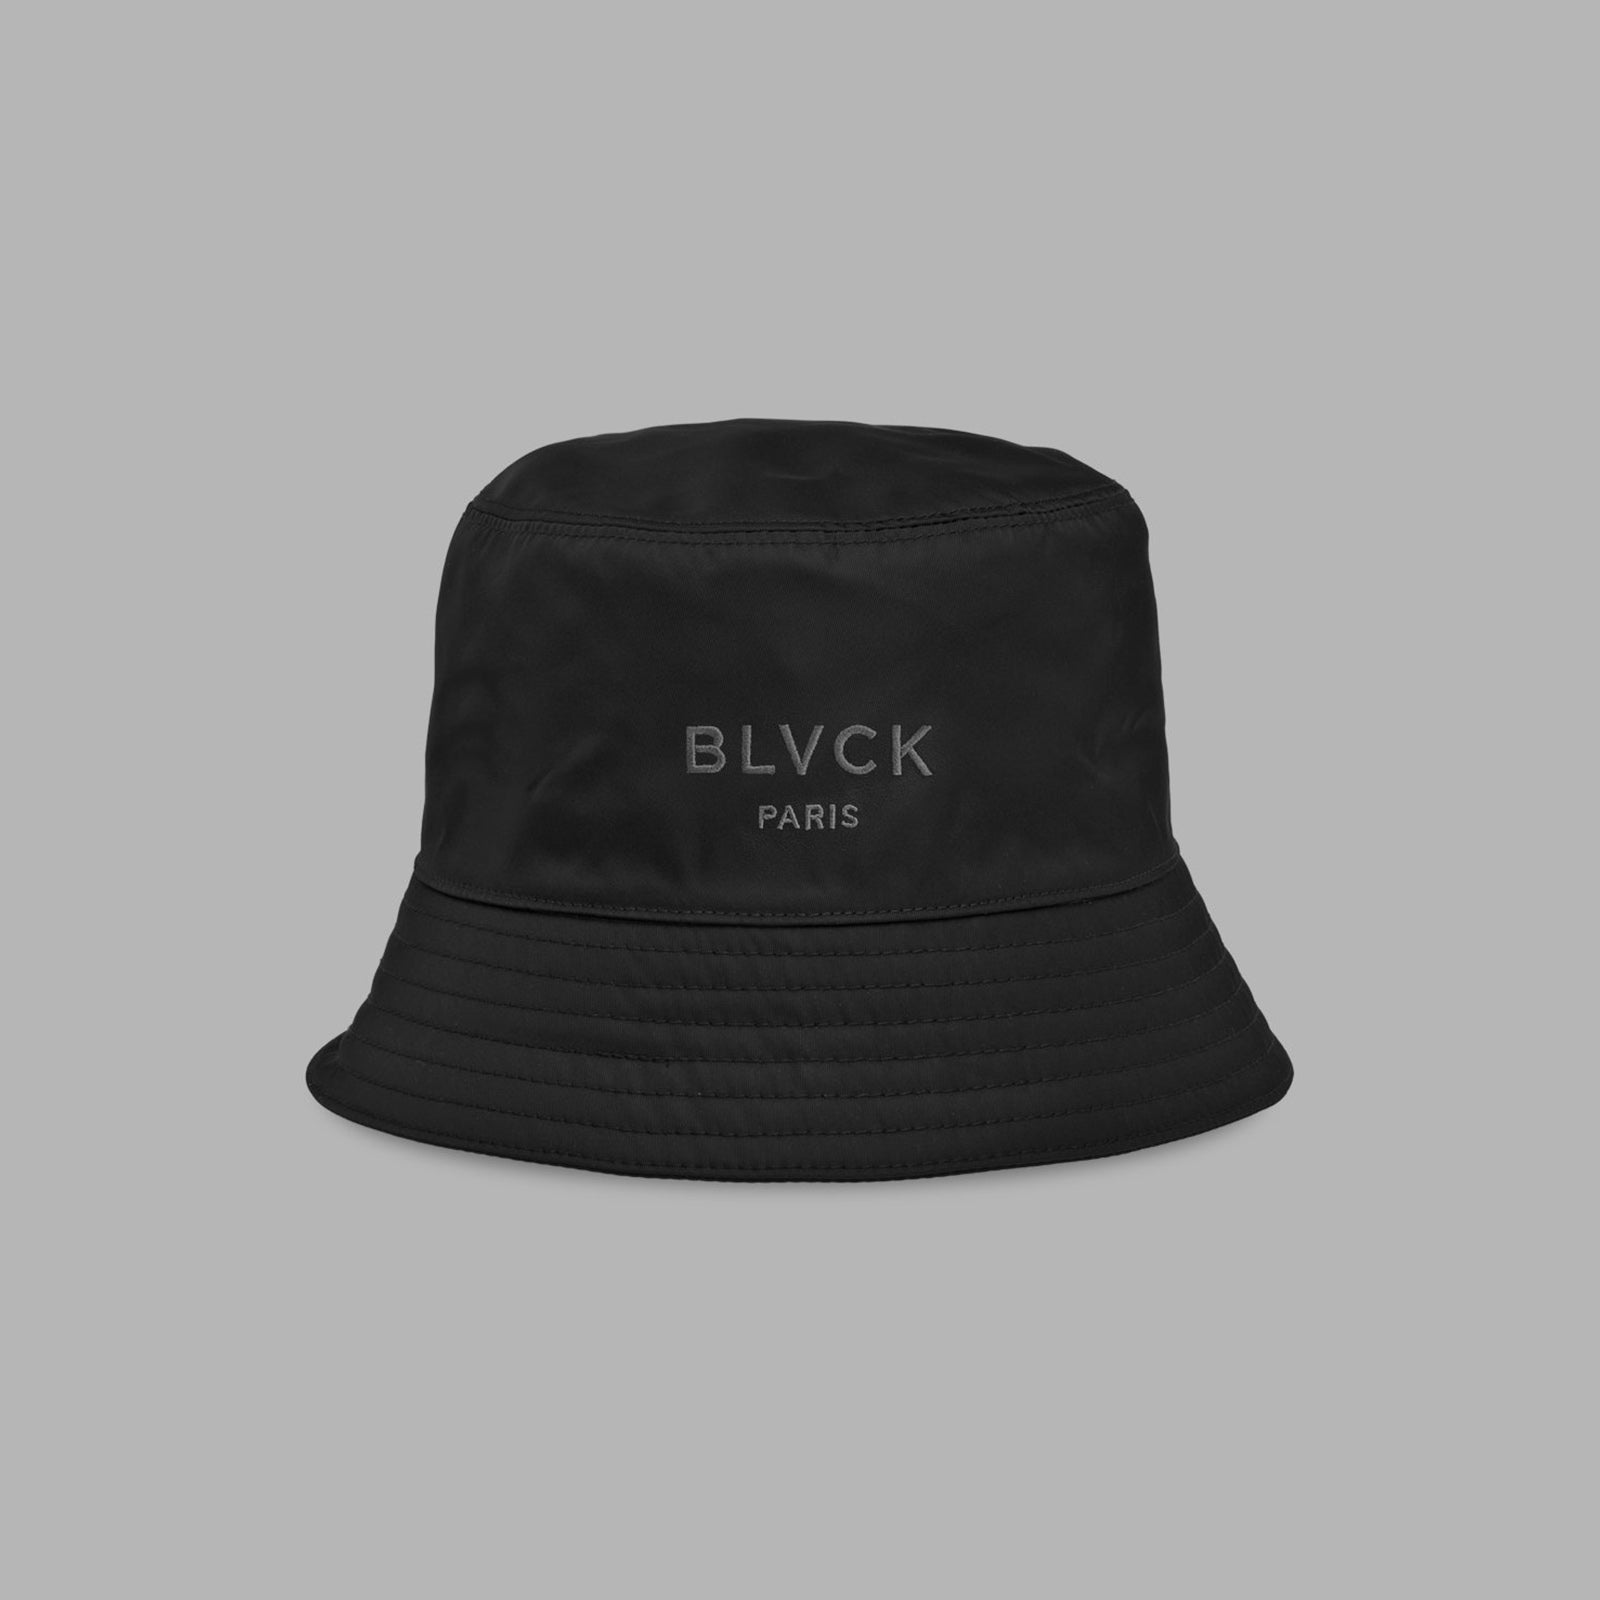 BLVCK HAT – Blvck Paris - Japan